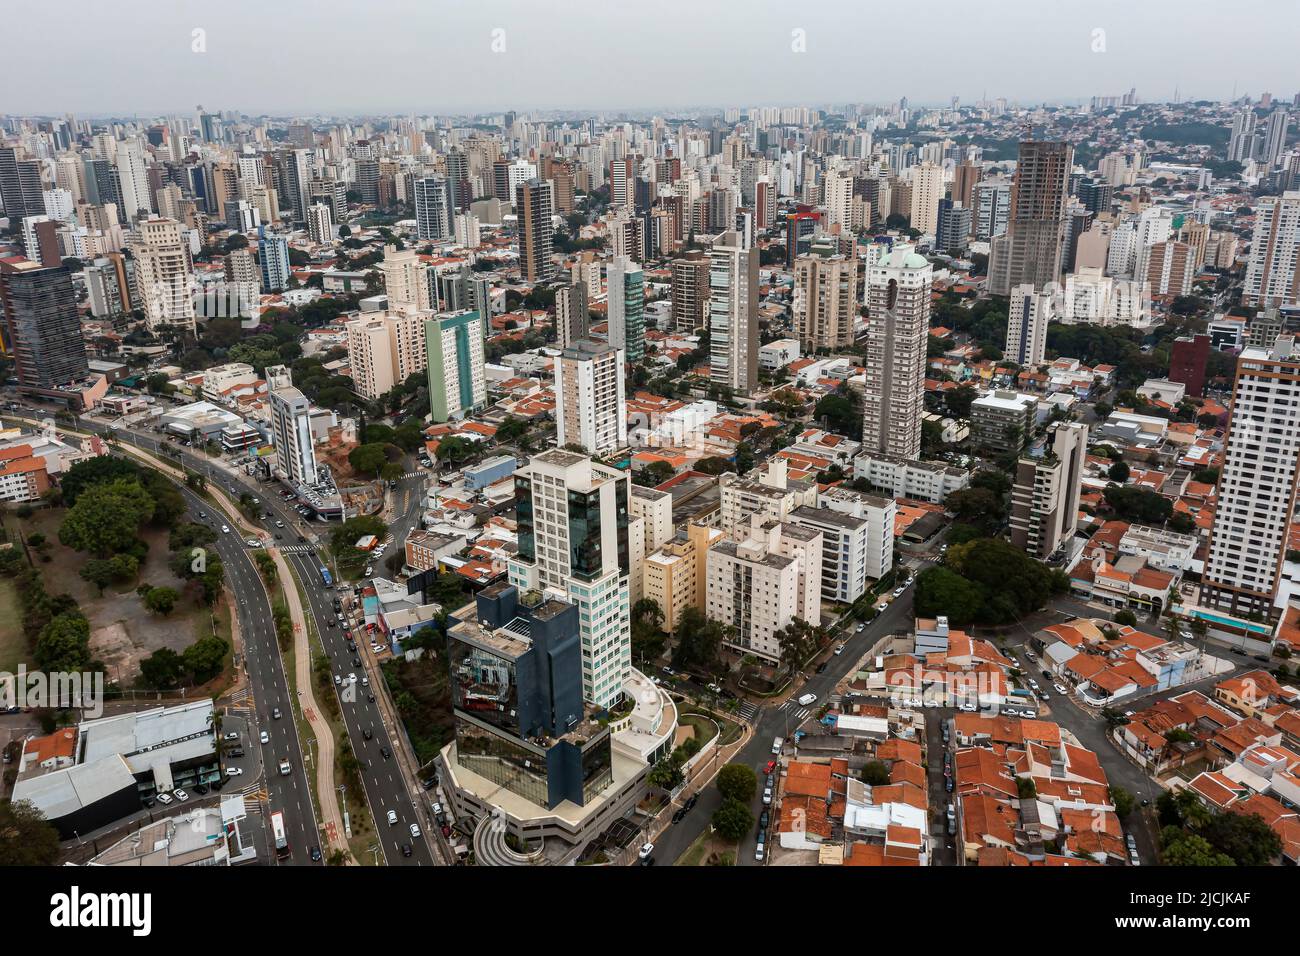 Campinas city, Sao Paulo state, Brazil. Stock Photo